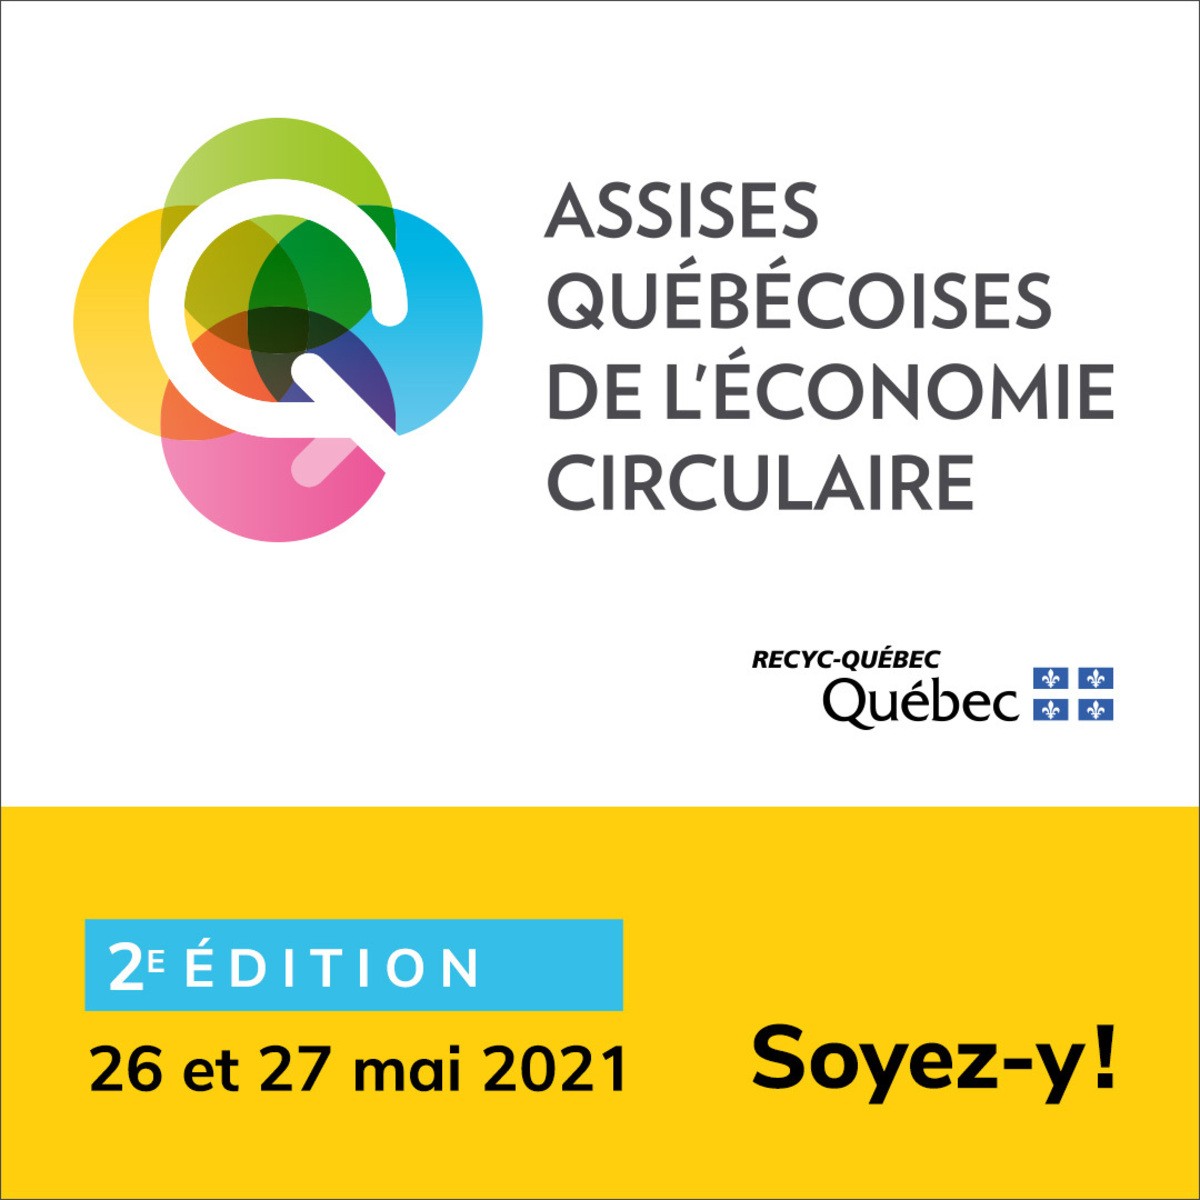 Ne manquez pas la 2e édition des Assises québécoises de l’économie circulaire